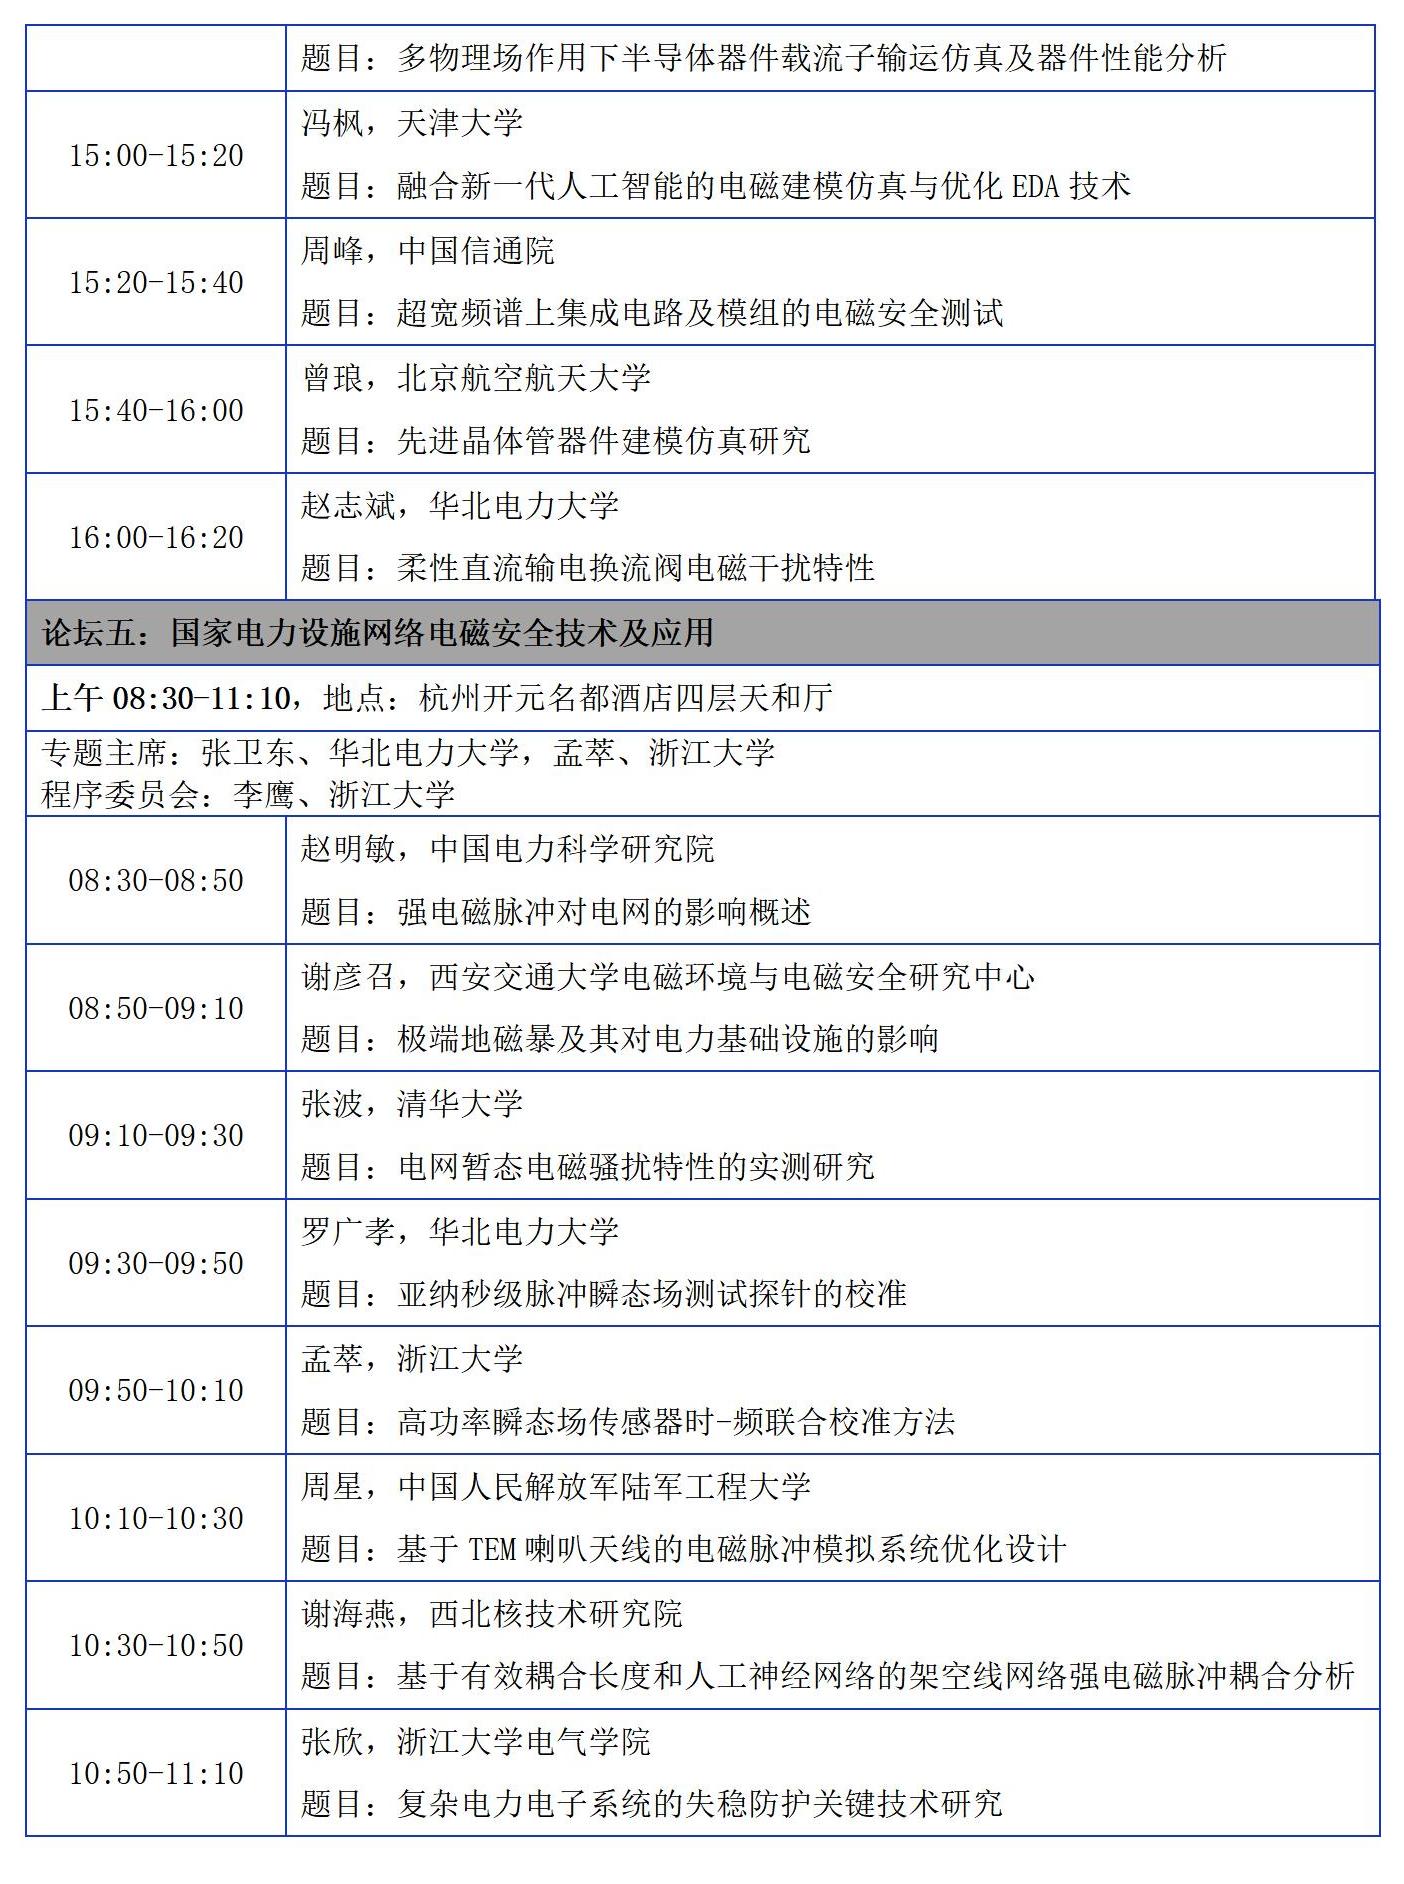 【日程版】2023年中国电磁兼容及电磁环境效应技术及产业创新大会会议征文通知0921_22(1)